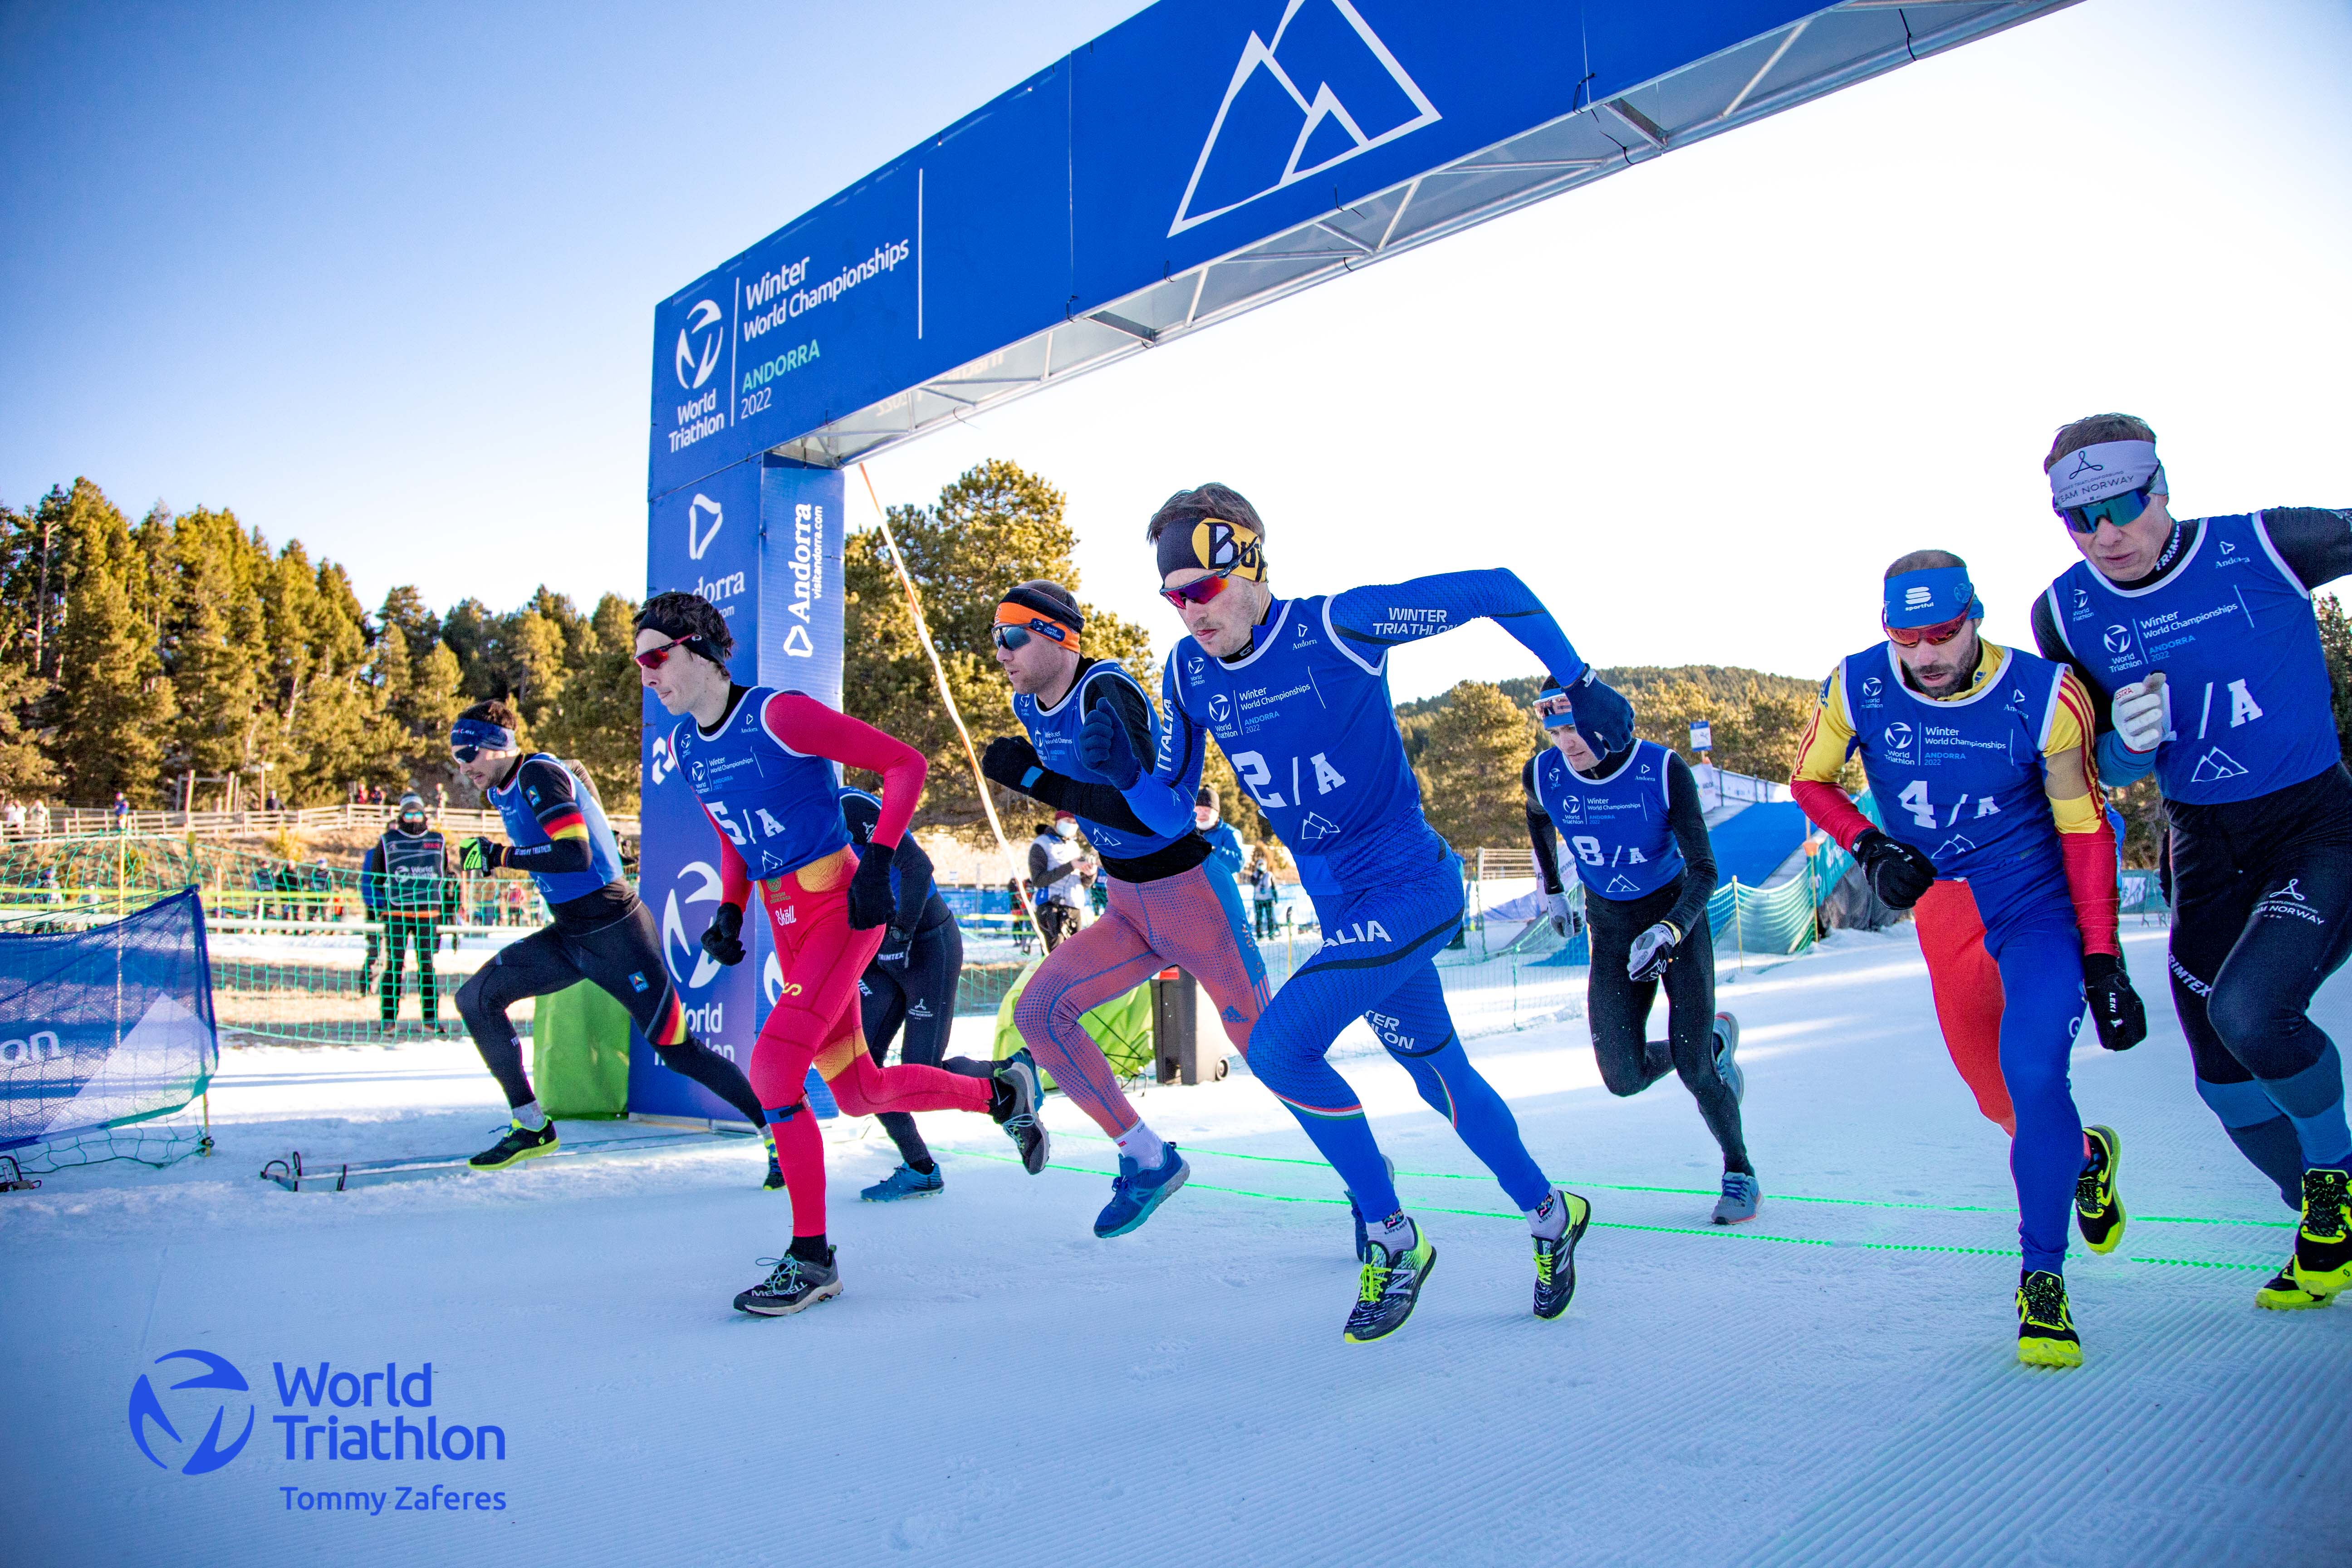 Franco Pesavento Campione Mondiale di Winter Triathlon e Duathlon, Argento per Sandra Mairhofer